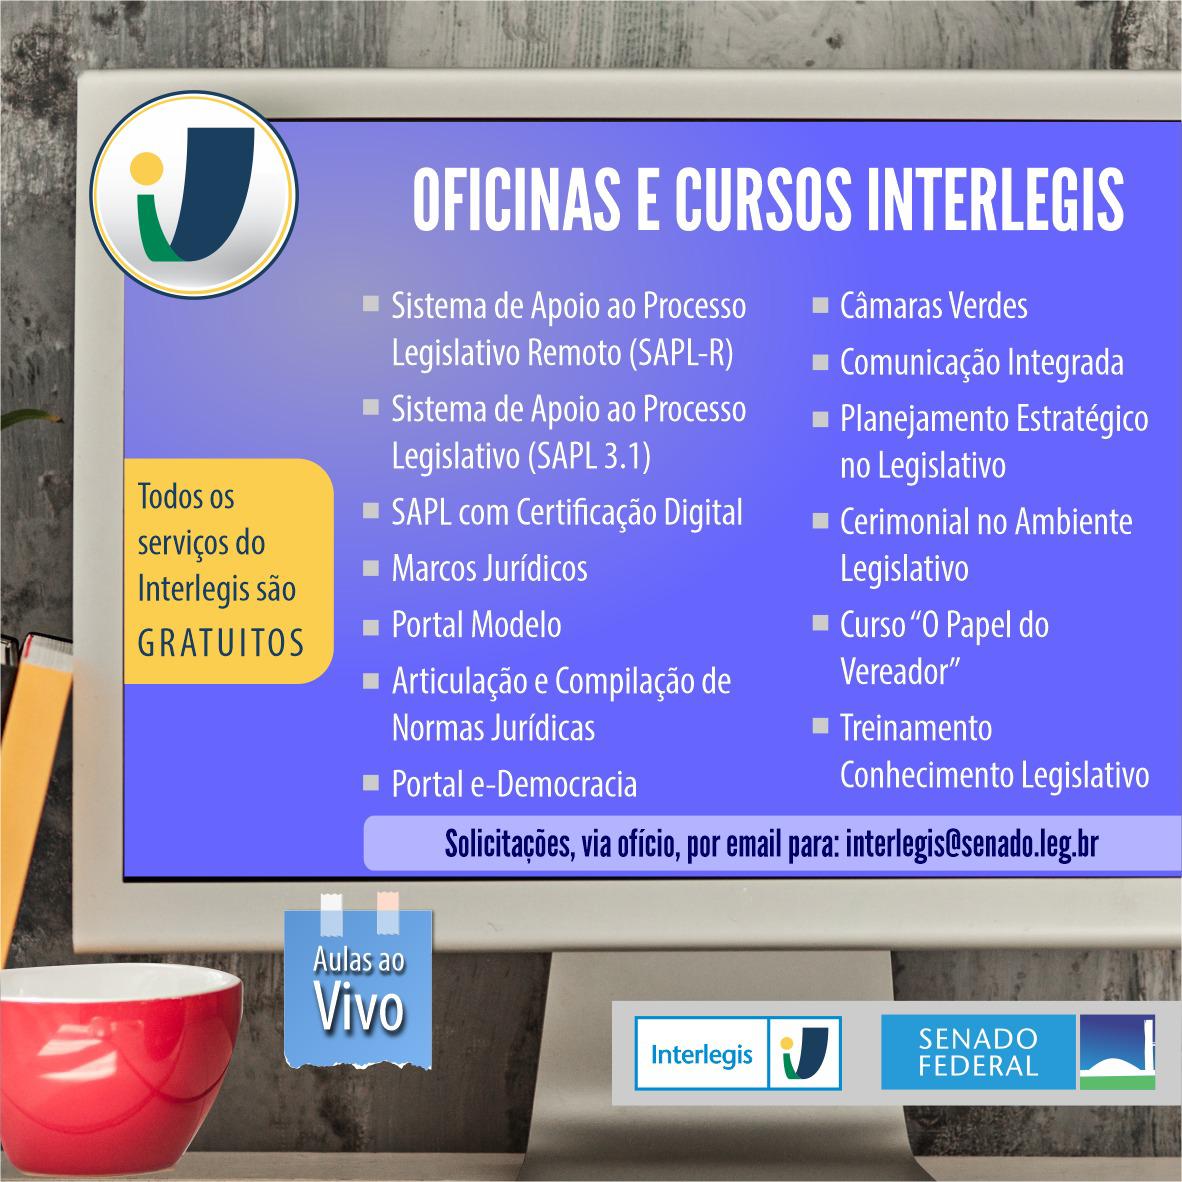 oficinas_cursos_interlegis_2021